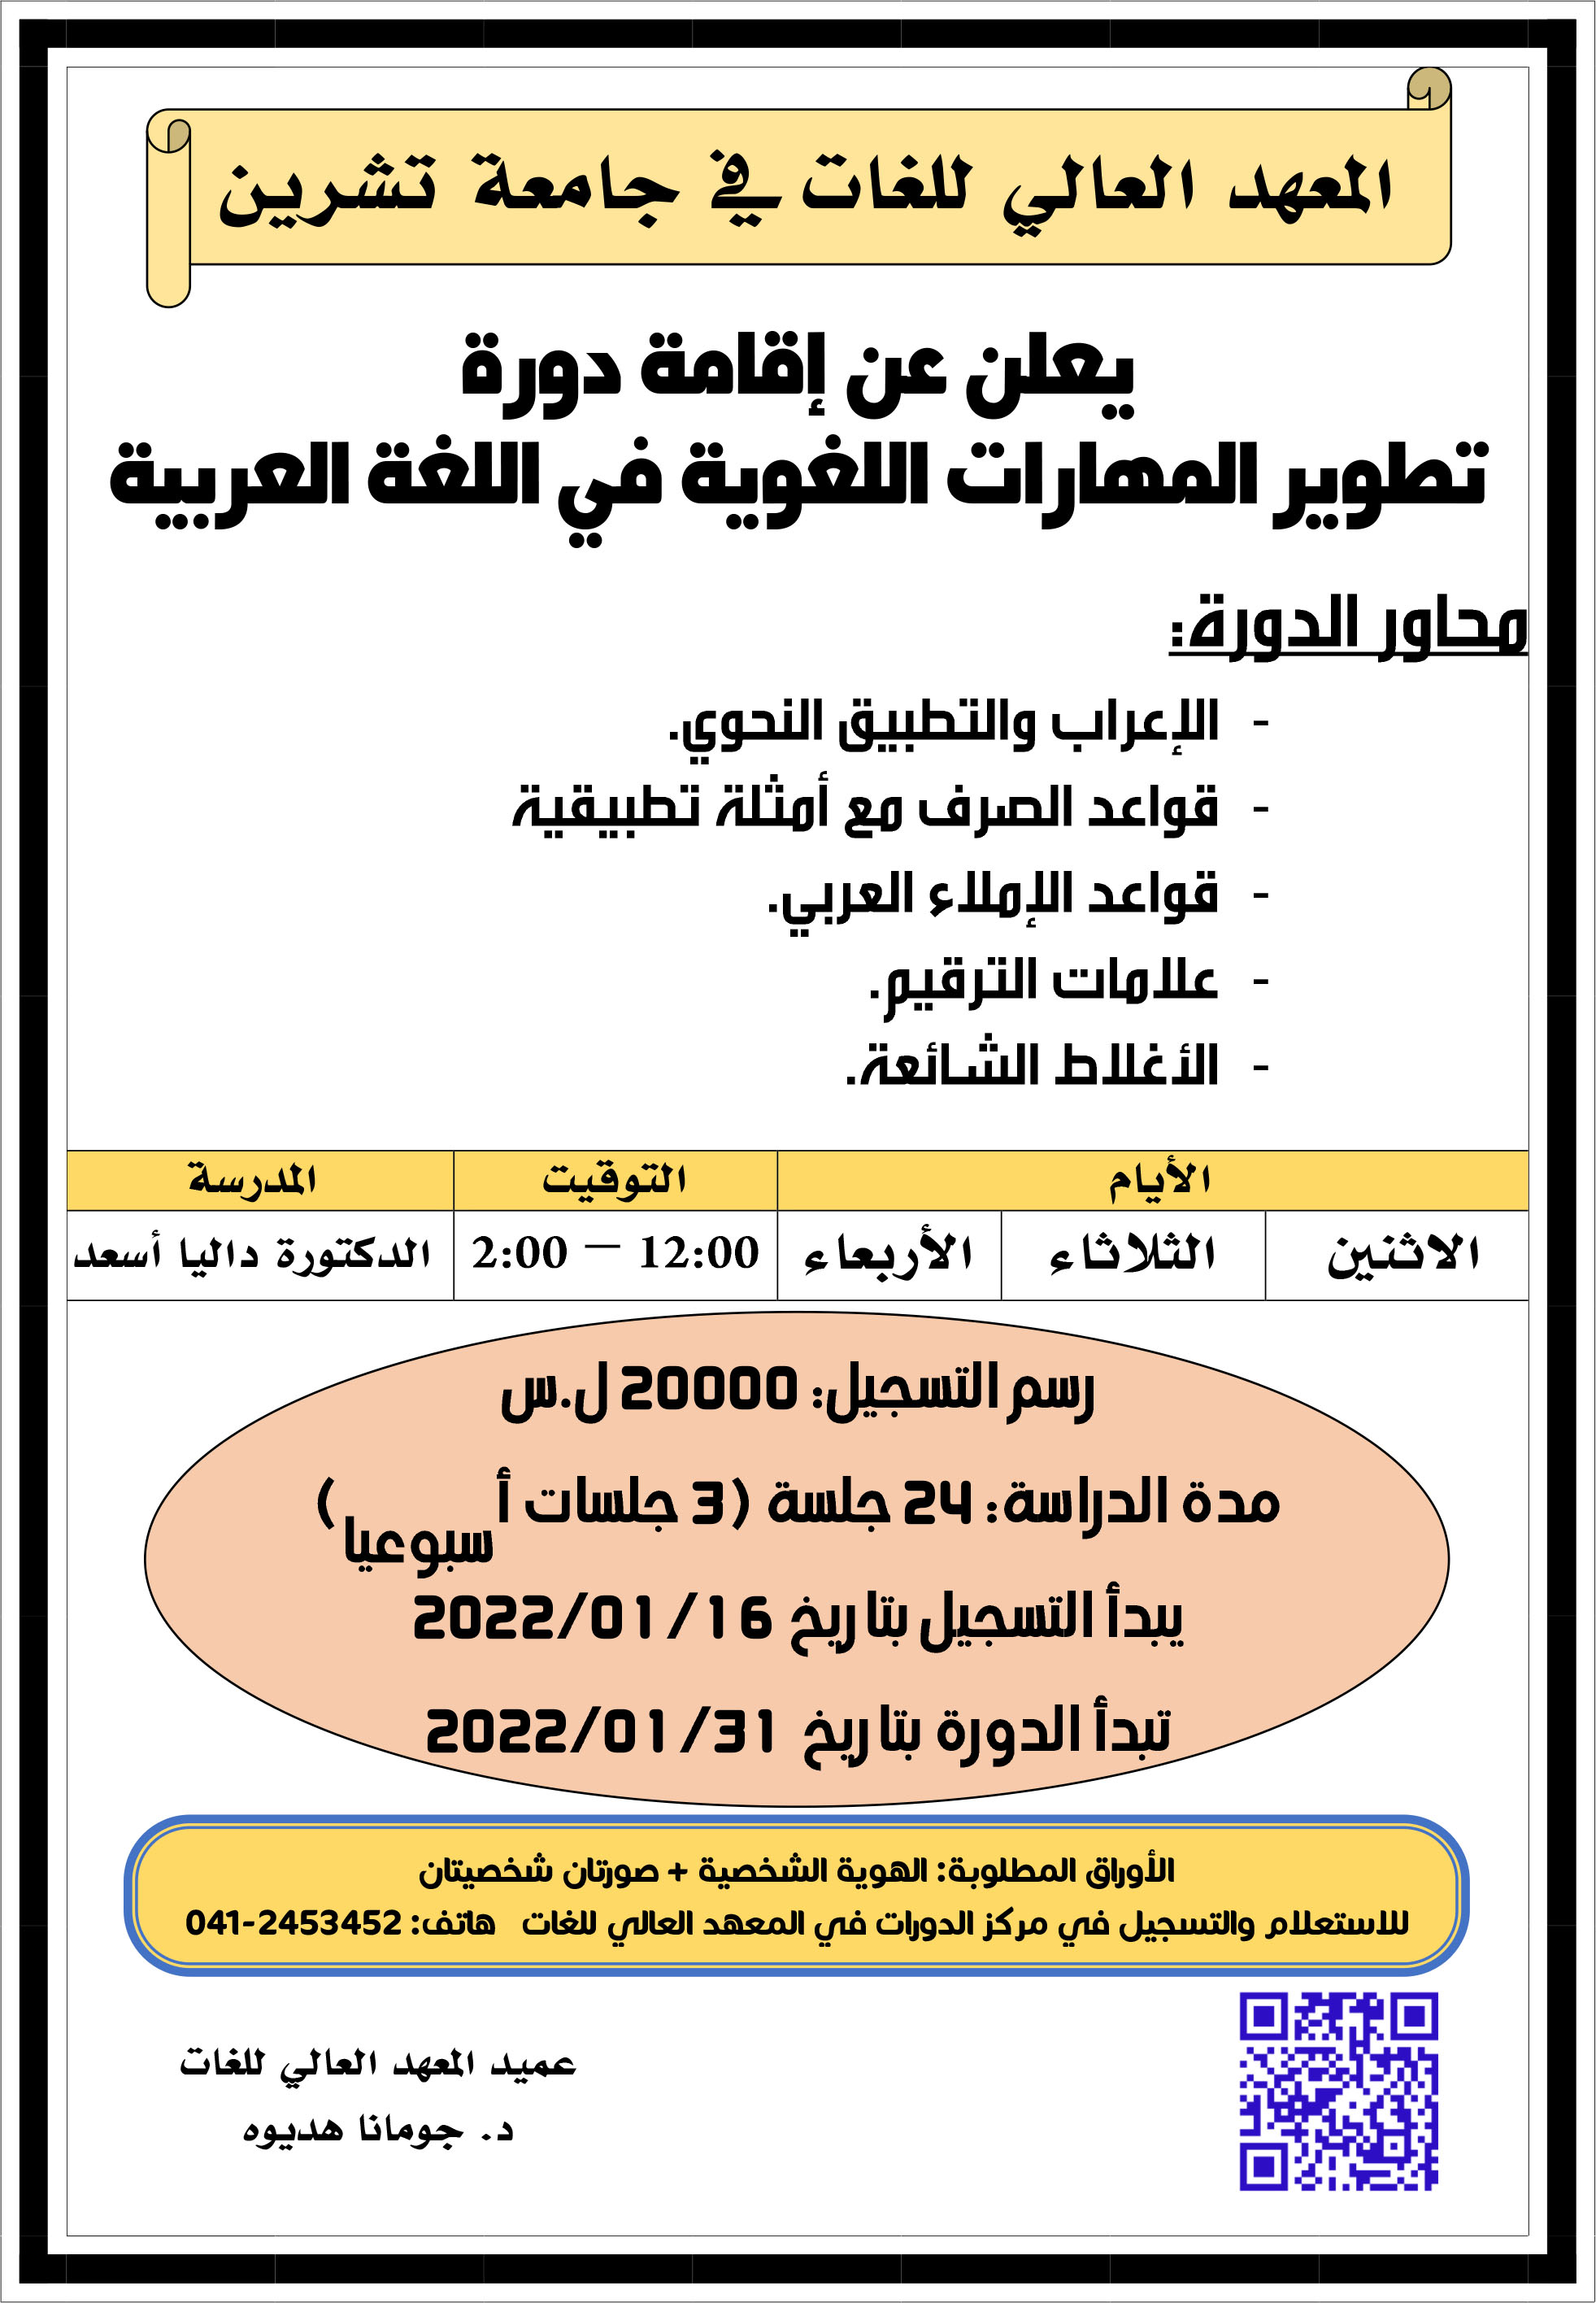 العهد العالي للغات يعلن عن إقامة دورة تطوير المهارات اللغوية في اللغة العربية التي تبدأ بتاريخ 31-01-2022